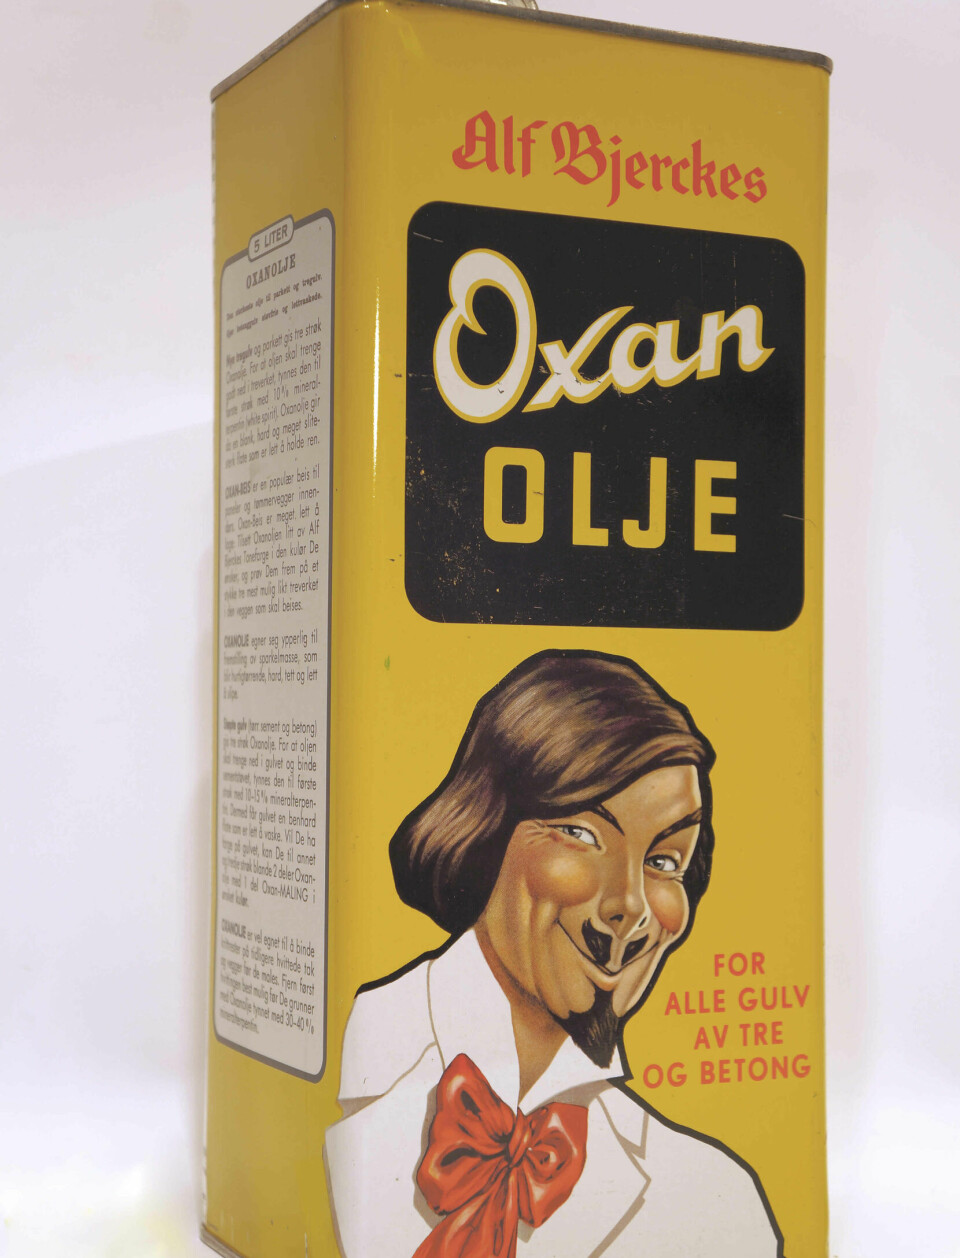 Maler’n av Alf Bjercke ble brukt til markedsføre de nye malingstypene. Karakteren sees her på bokser med oxanolje.